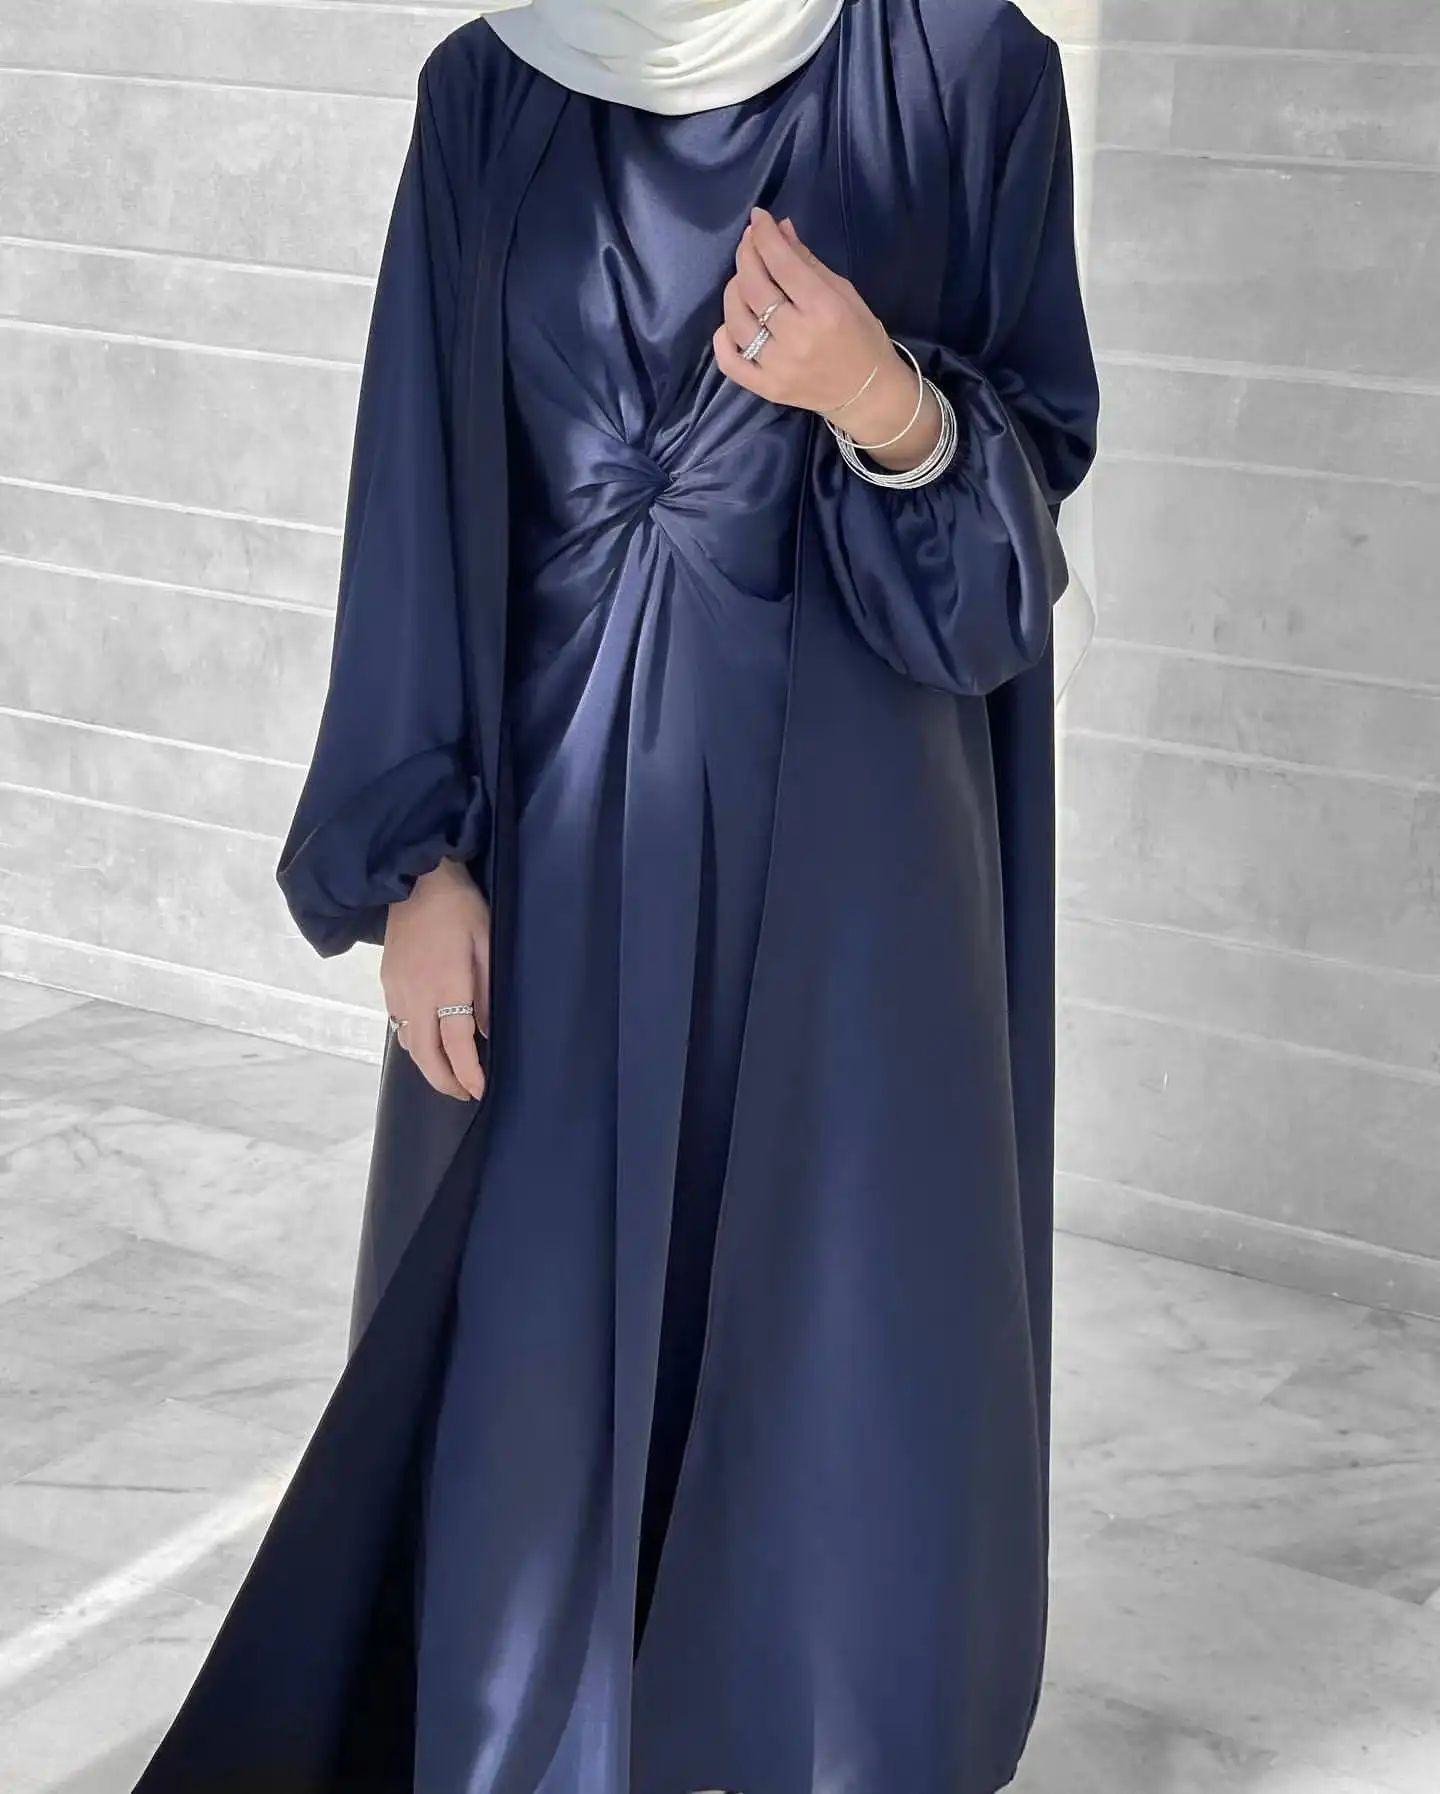 महिलाओं के लिए मोरक्कन स्टाइल दुबई अबाया मुस्लिम ड्रेस शॉर्ट्स लेगिंग्स और वयस्कों के लिए जैकेट ब्राइड्समेड ड्रेस